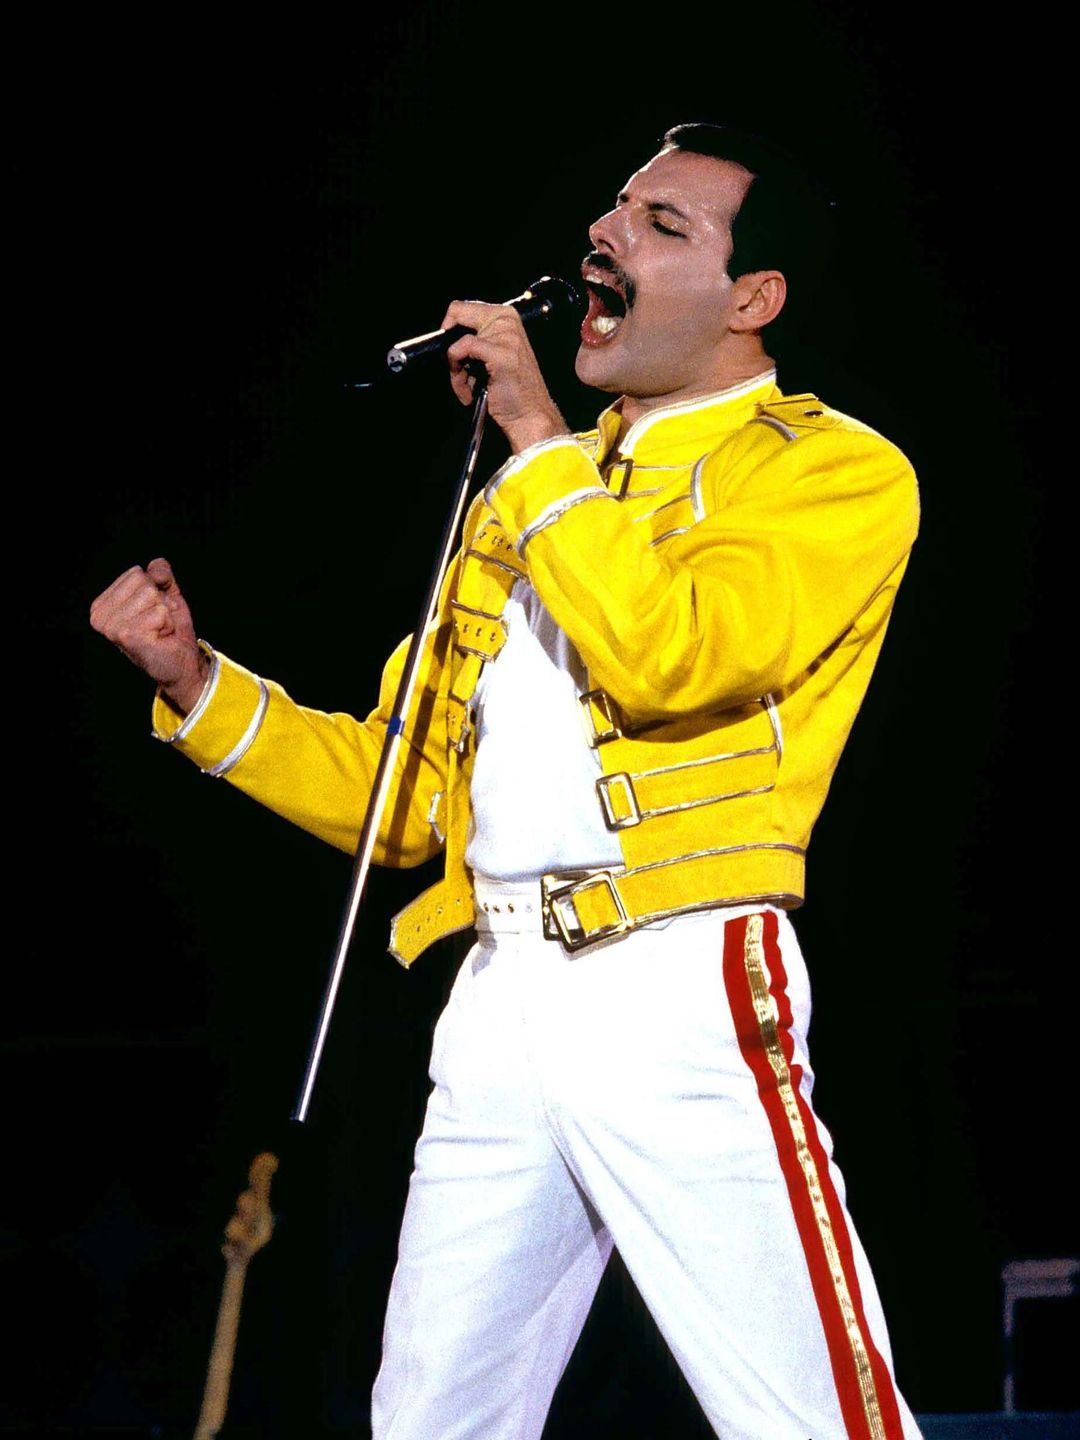 Freddie Mercury biography